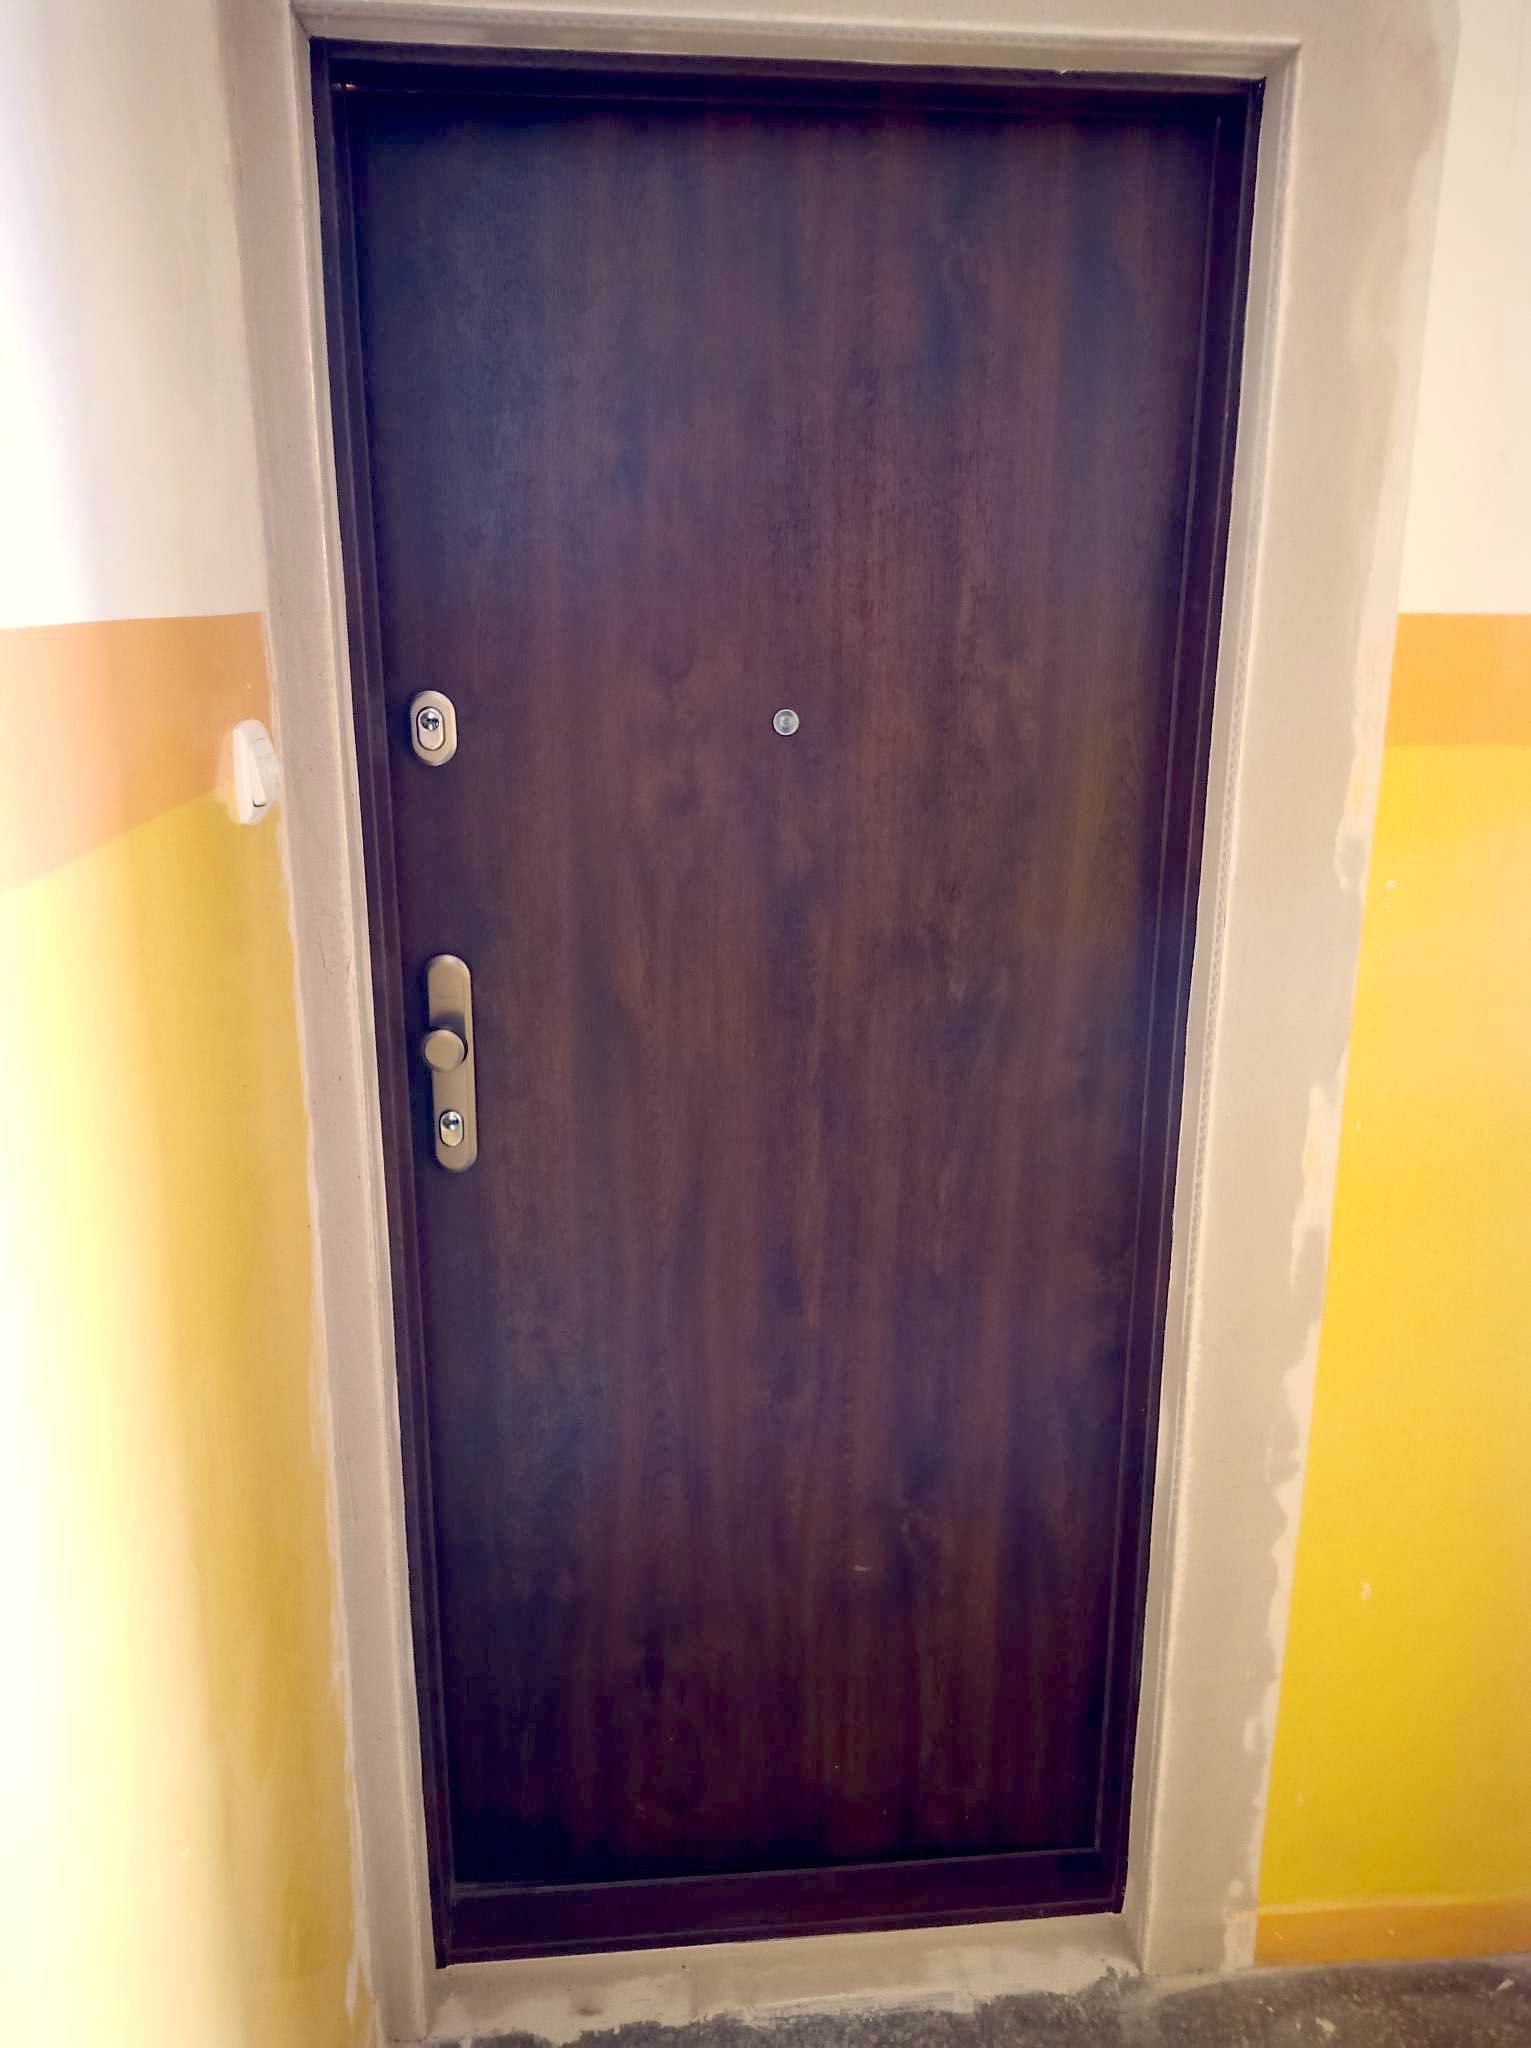 NOWE Drzwi wewnątrzklatkowe do mieszkania na zamówienie GWARANCJA